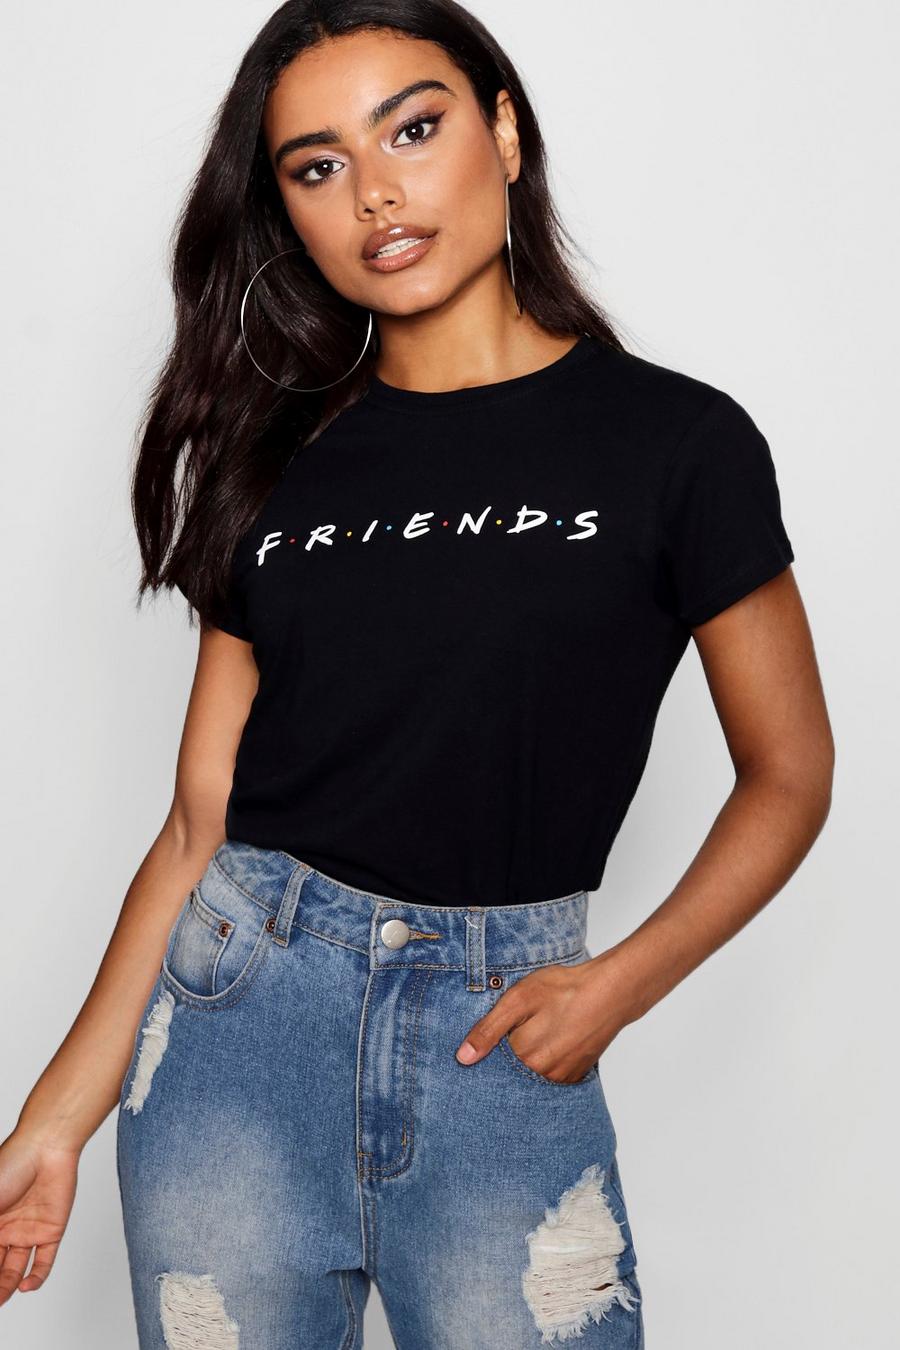 Black "Friends" licensierad t-shirt med Vänner-motiv image number 1